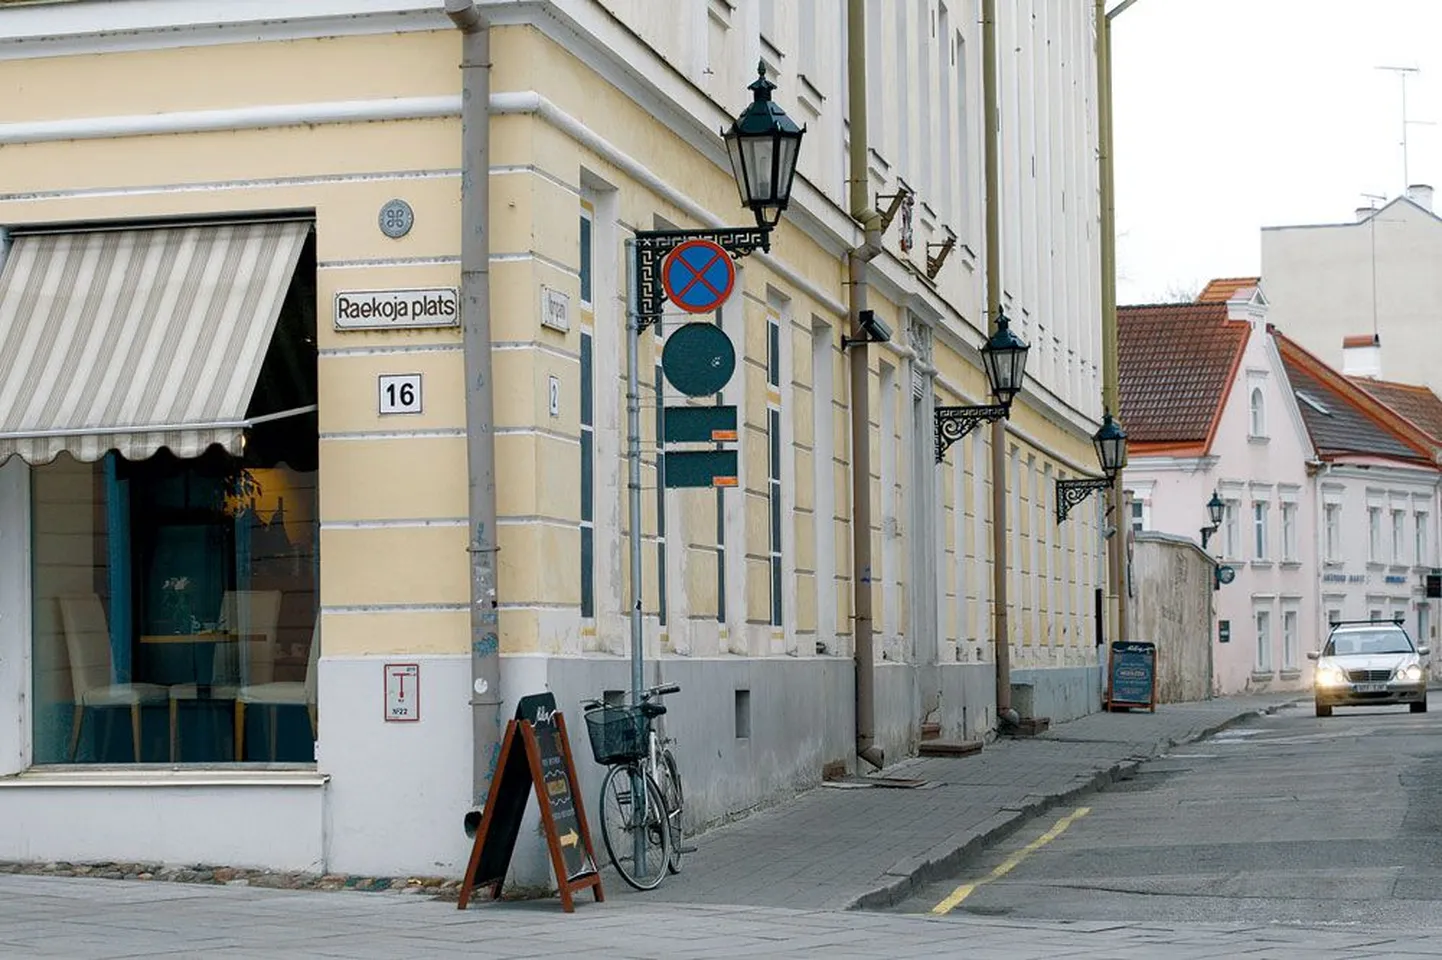 Paar kuud tagasi avatud vene restorani Vassilissa kõhukas Matrjoška seisis Kompanii tänava ja Raekoja platsi nurgal ligi kuu aega. Nüüd on koht tühi, sest laupäeva hilisõhtul läks kuju sealt jäljetult kaduma.